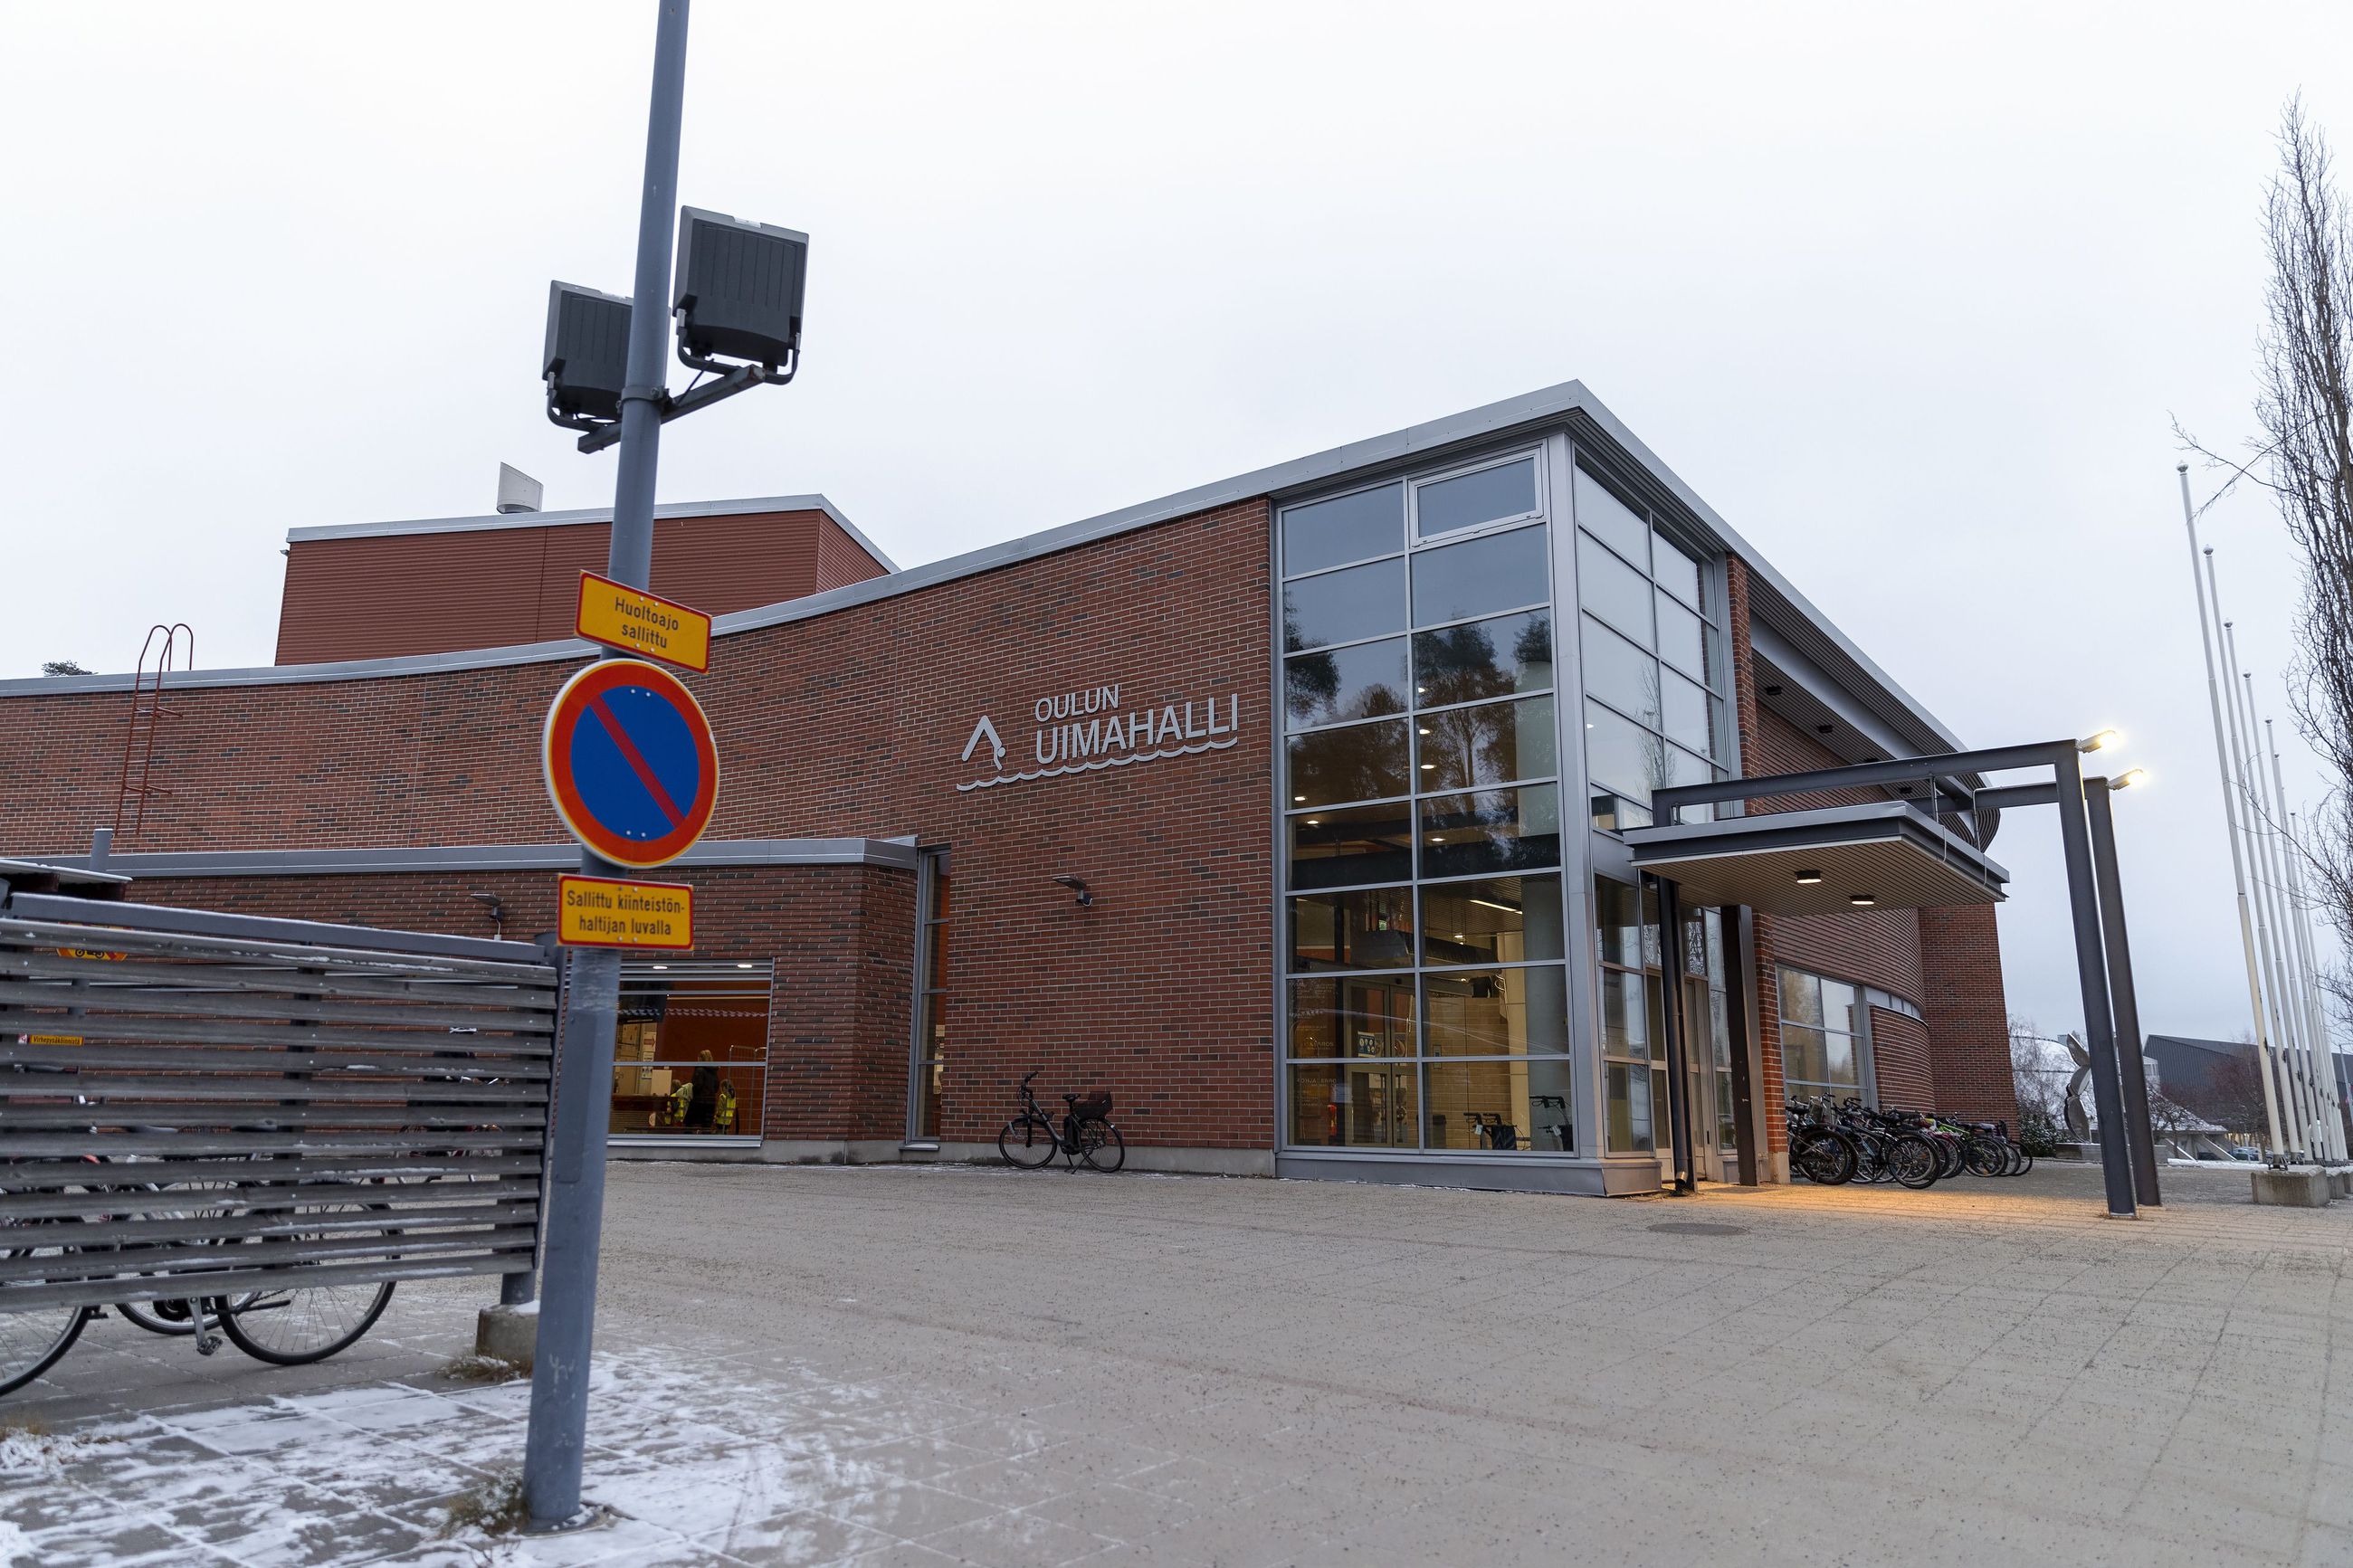 Oulun uimahallin monitoimiallas jouduttiin sulkemaan viime viikolla bakteerilöydöksen vuoksi.